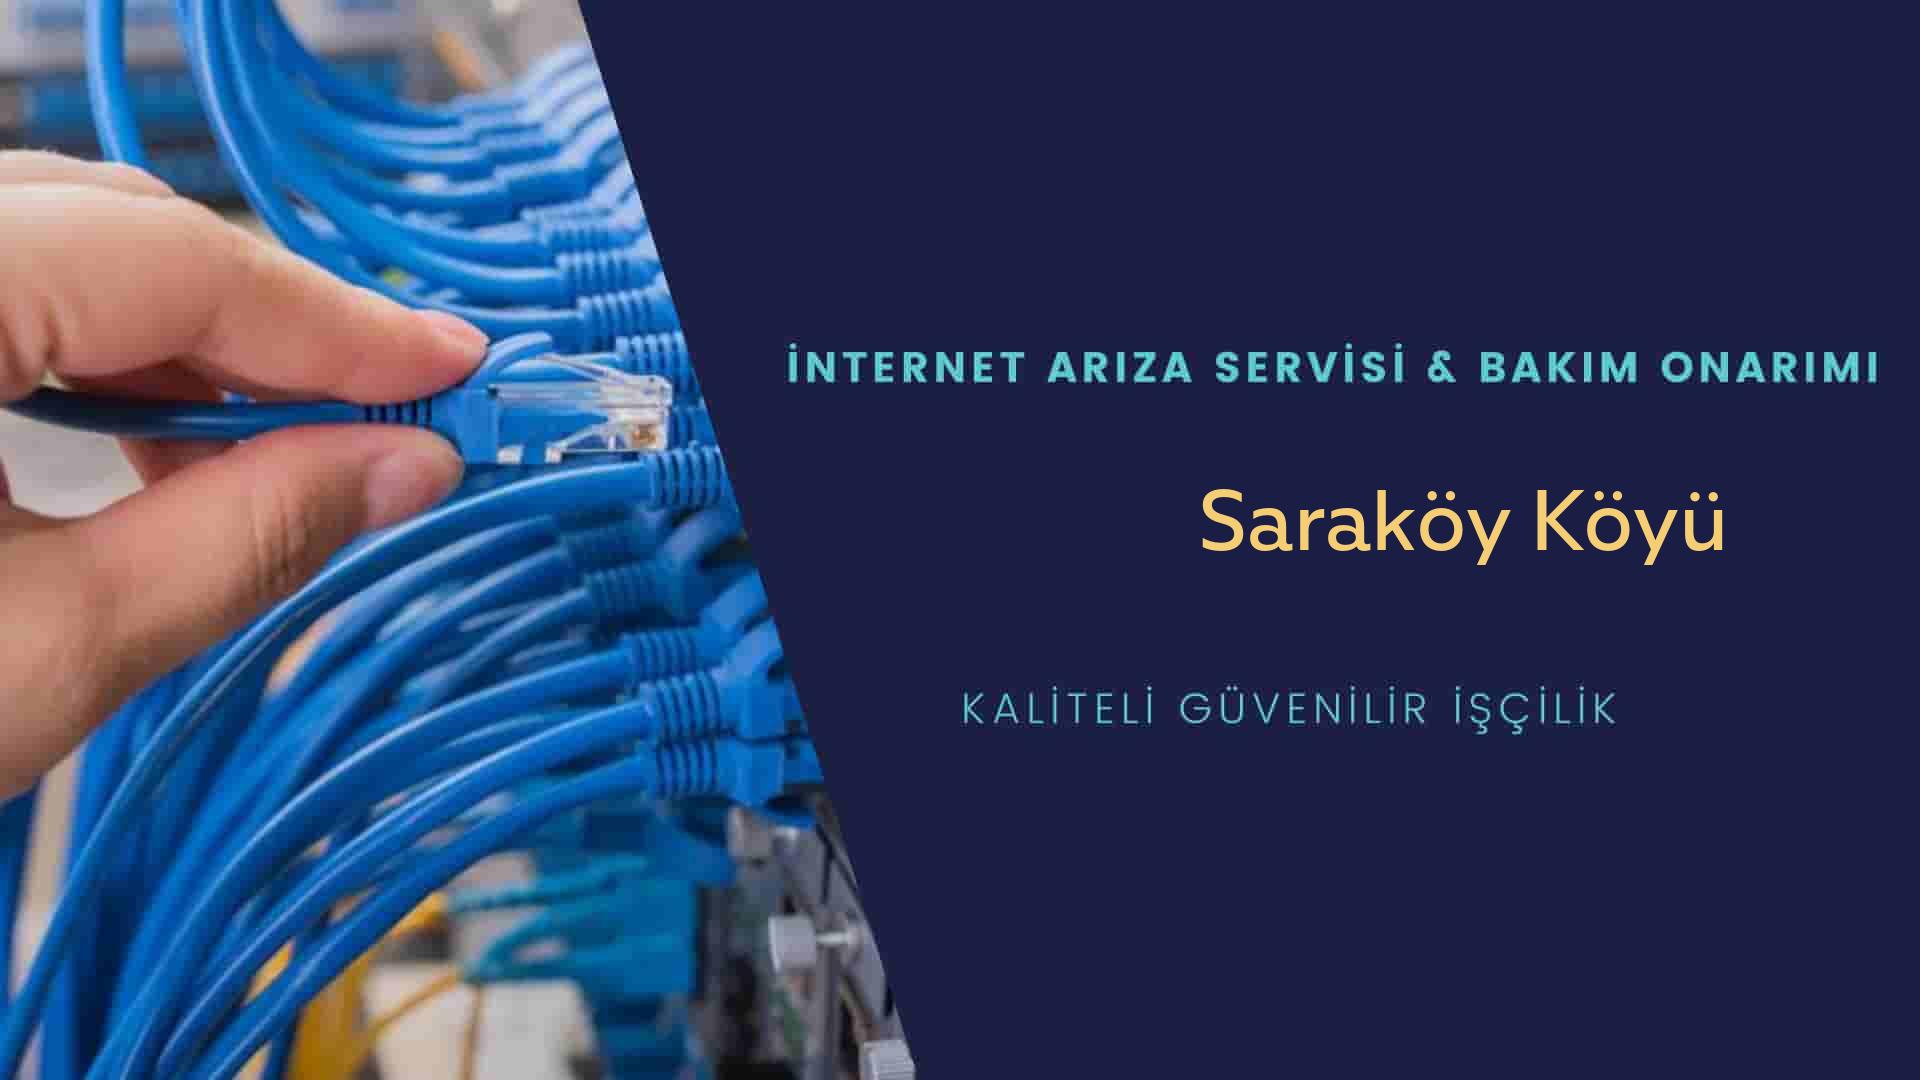 Saraköy Köyü internet kablosu çekimi yapan yerler veya elektrikçiler mi? arıyorsunuz doğru yerdesiniz o zaman sizlere 7/24 yardımcı olacak profesyonel ustalarımız bir telefon kadar yakındır size.